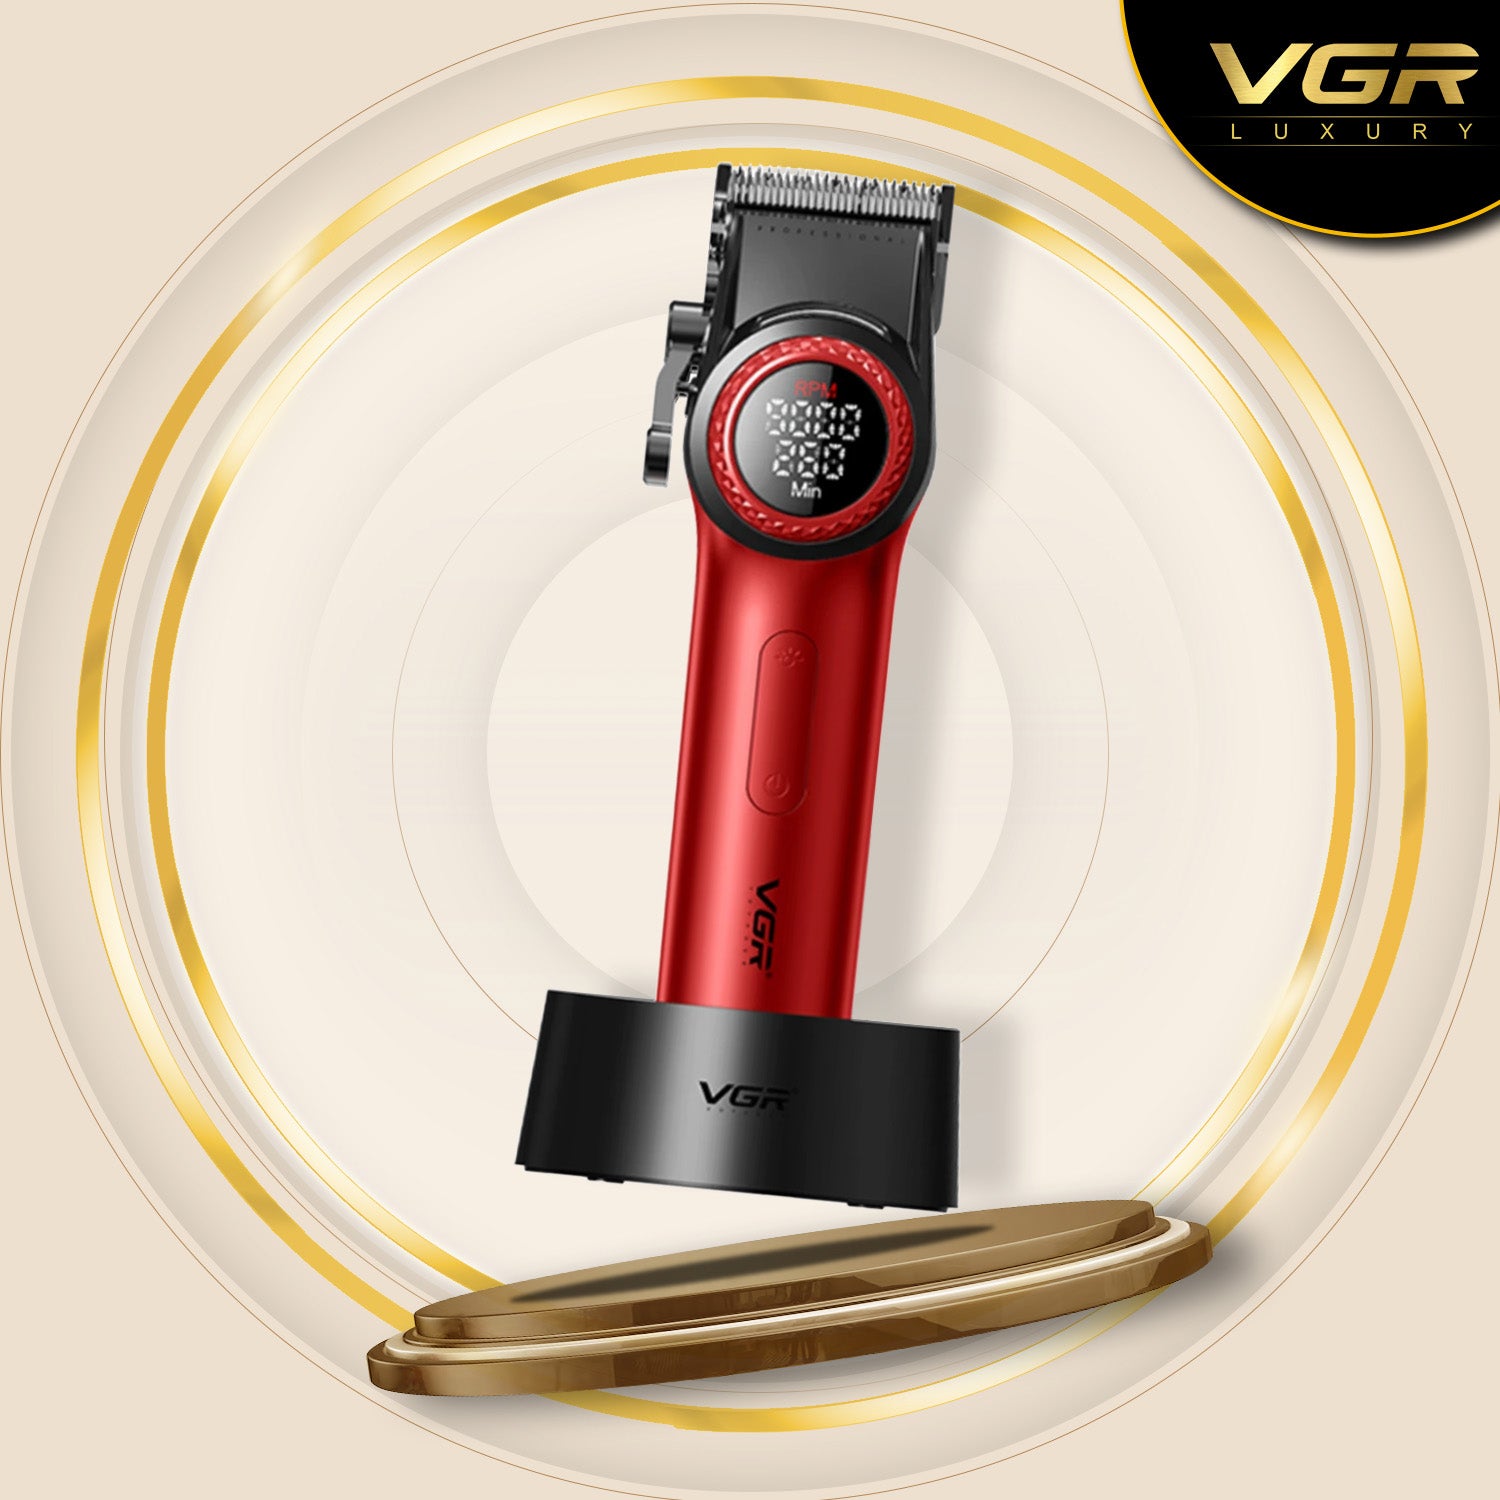 VGR V-001 Professional Hair Clipper For Men, Green